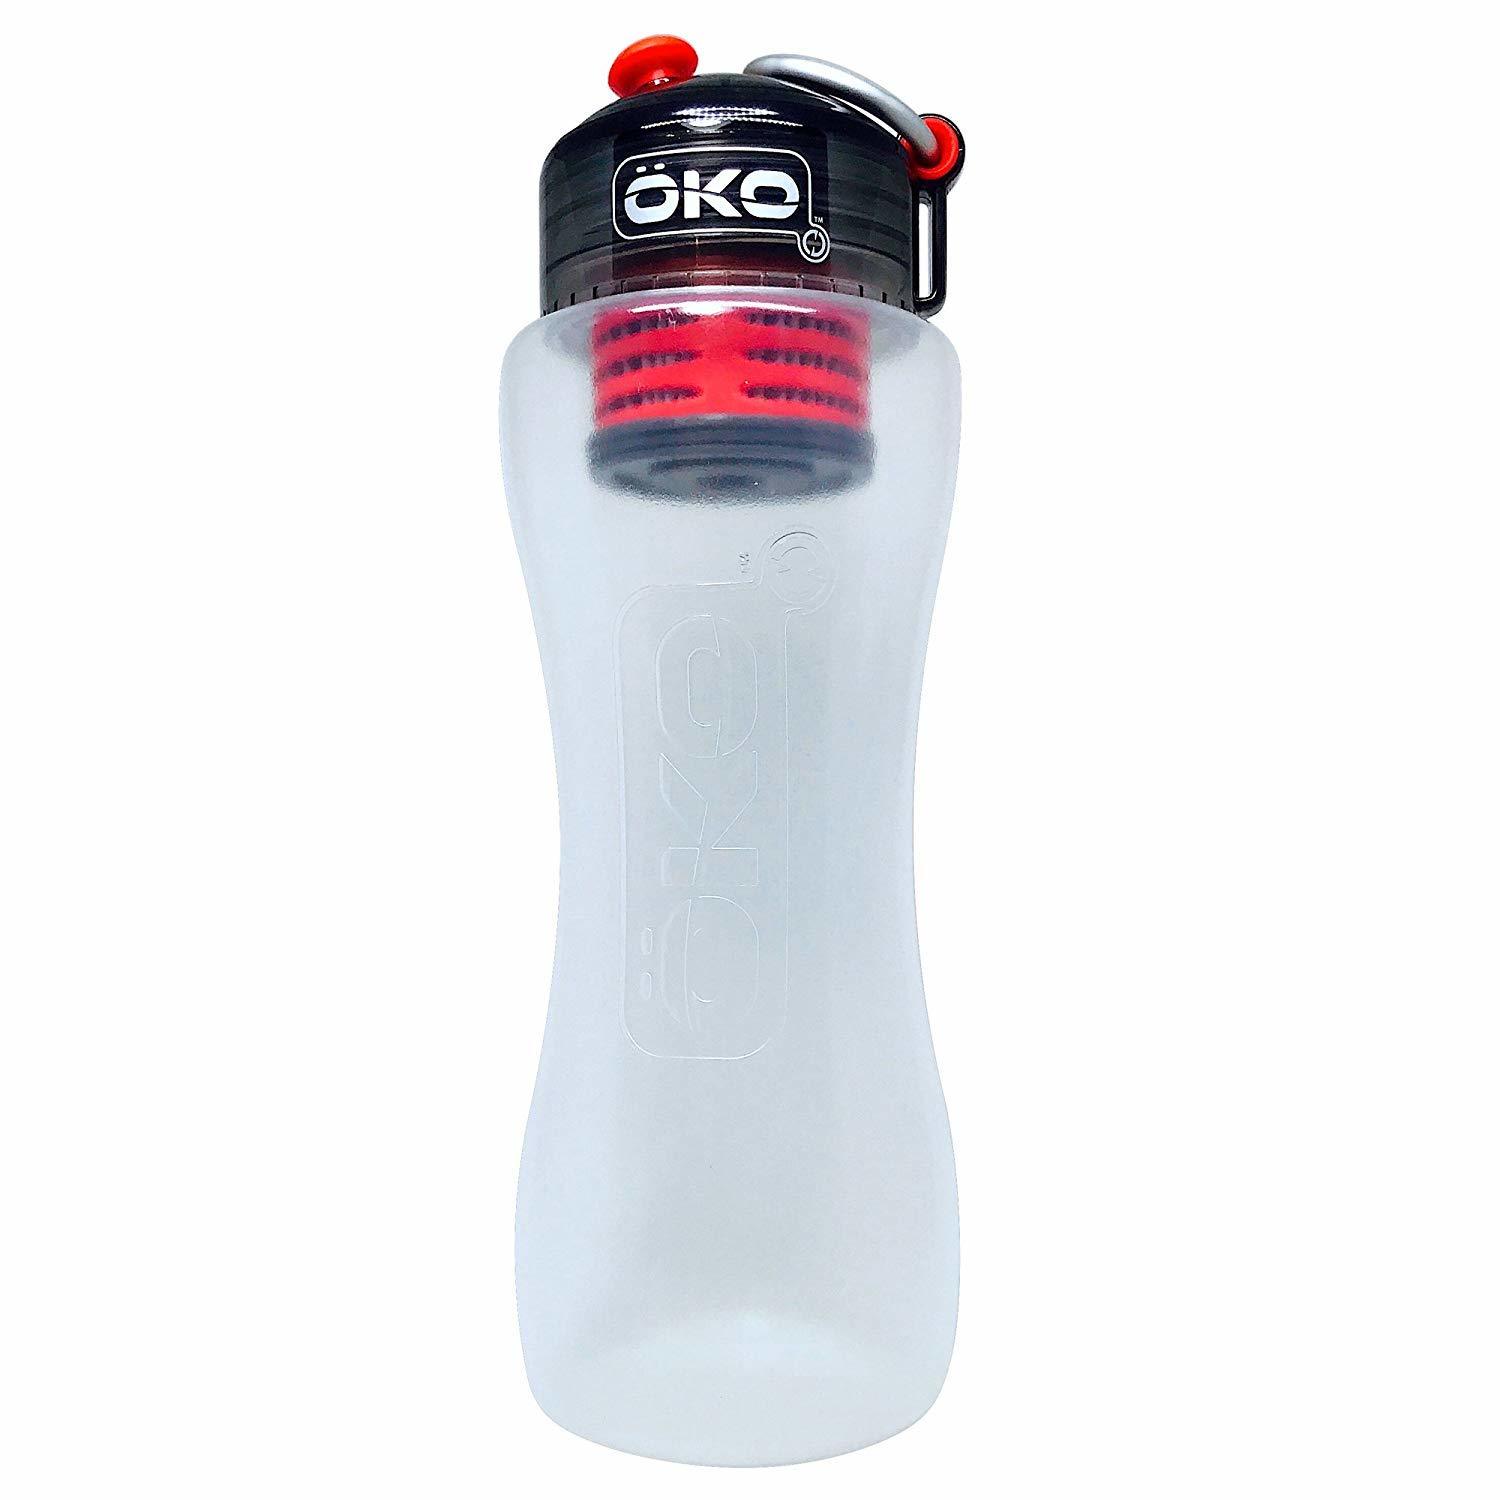 OKO H2O Advanced Filtration Bottle - Best 1 Litre Filtered Water Bottle